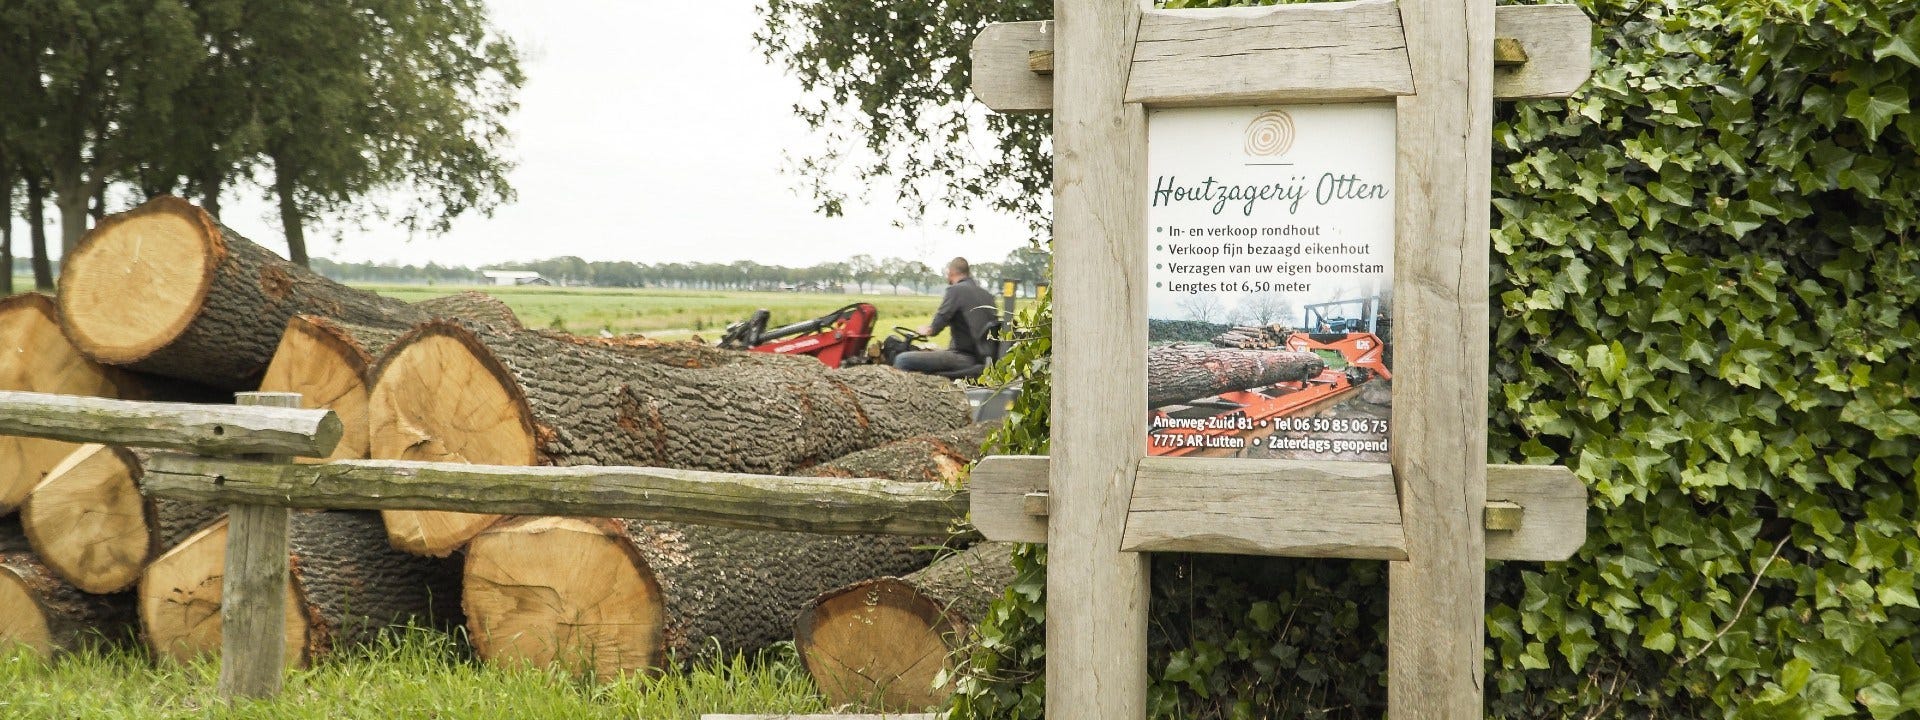 Le sciage du bois de chêne avec le Wood-Mizer LX50 aux Pays-Bas